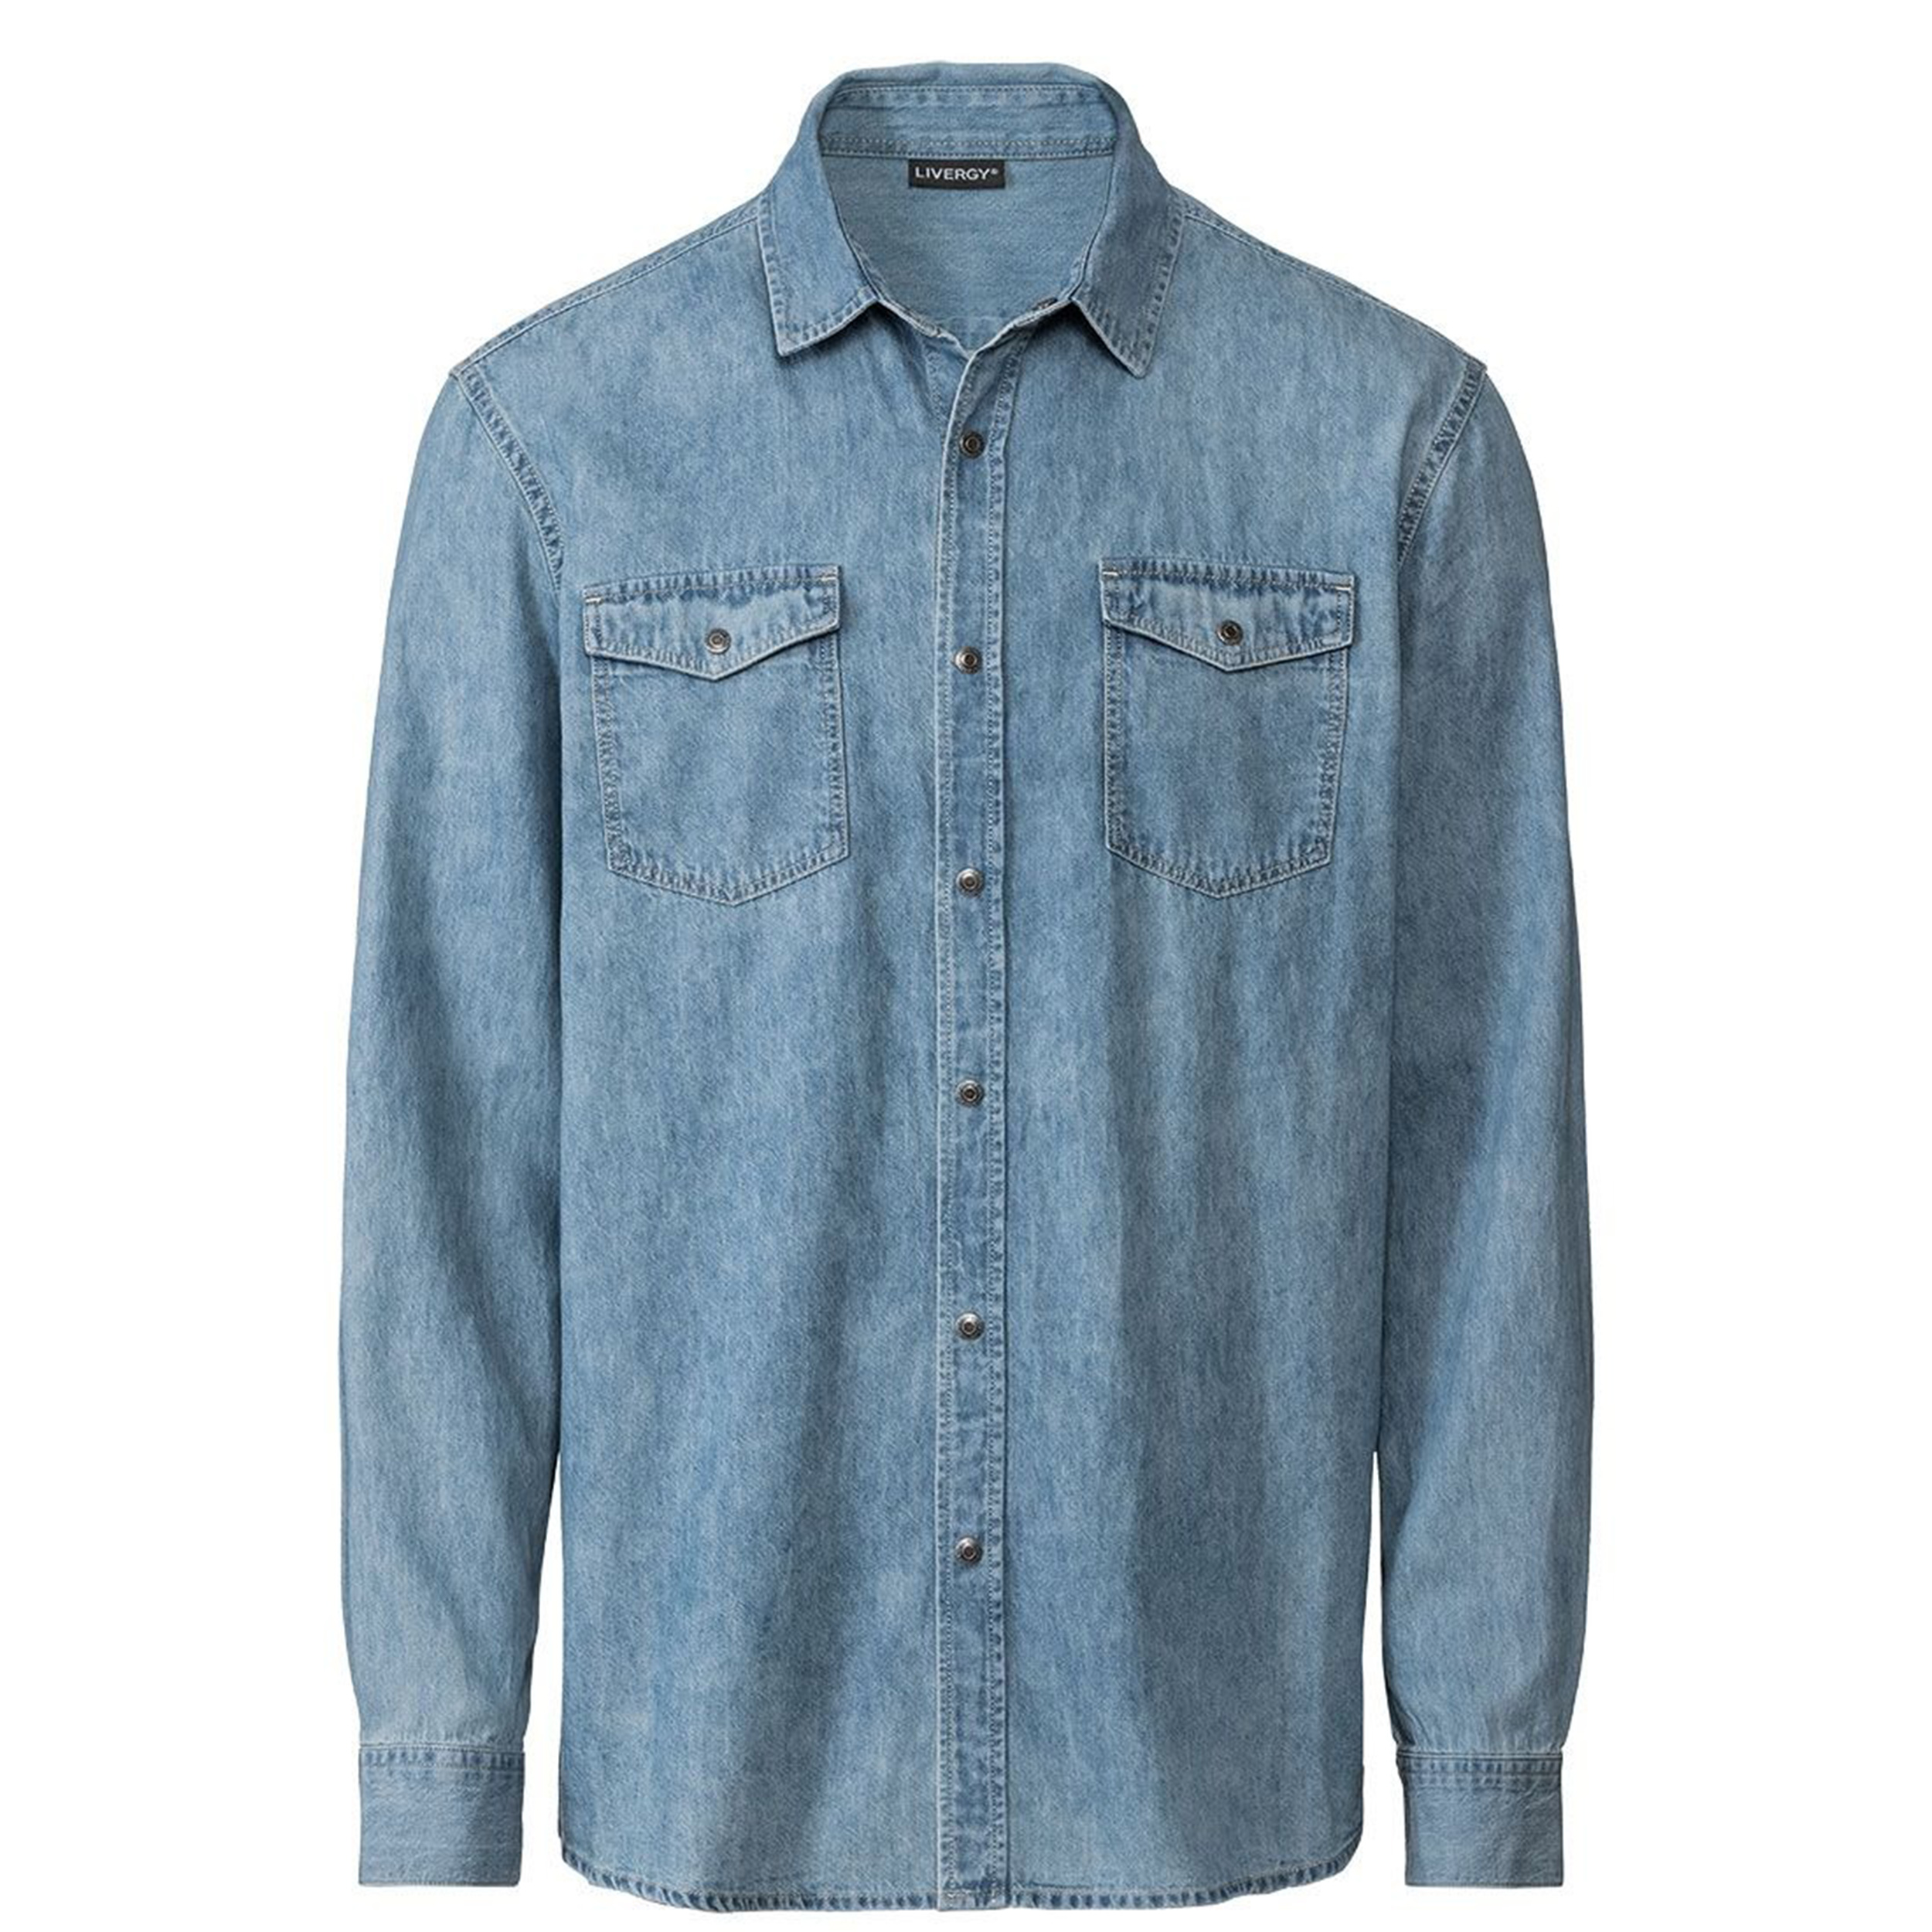 نکته خرید - قیمت روز پیراهن آستین بلند مردانه لیورجی مدل DNMSH رنگ آبی خرید